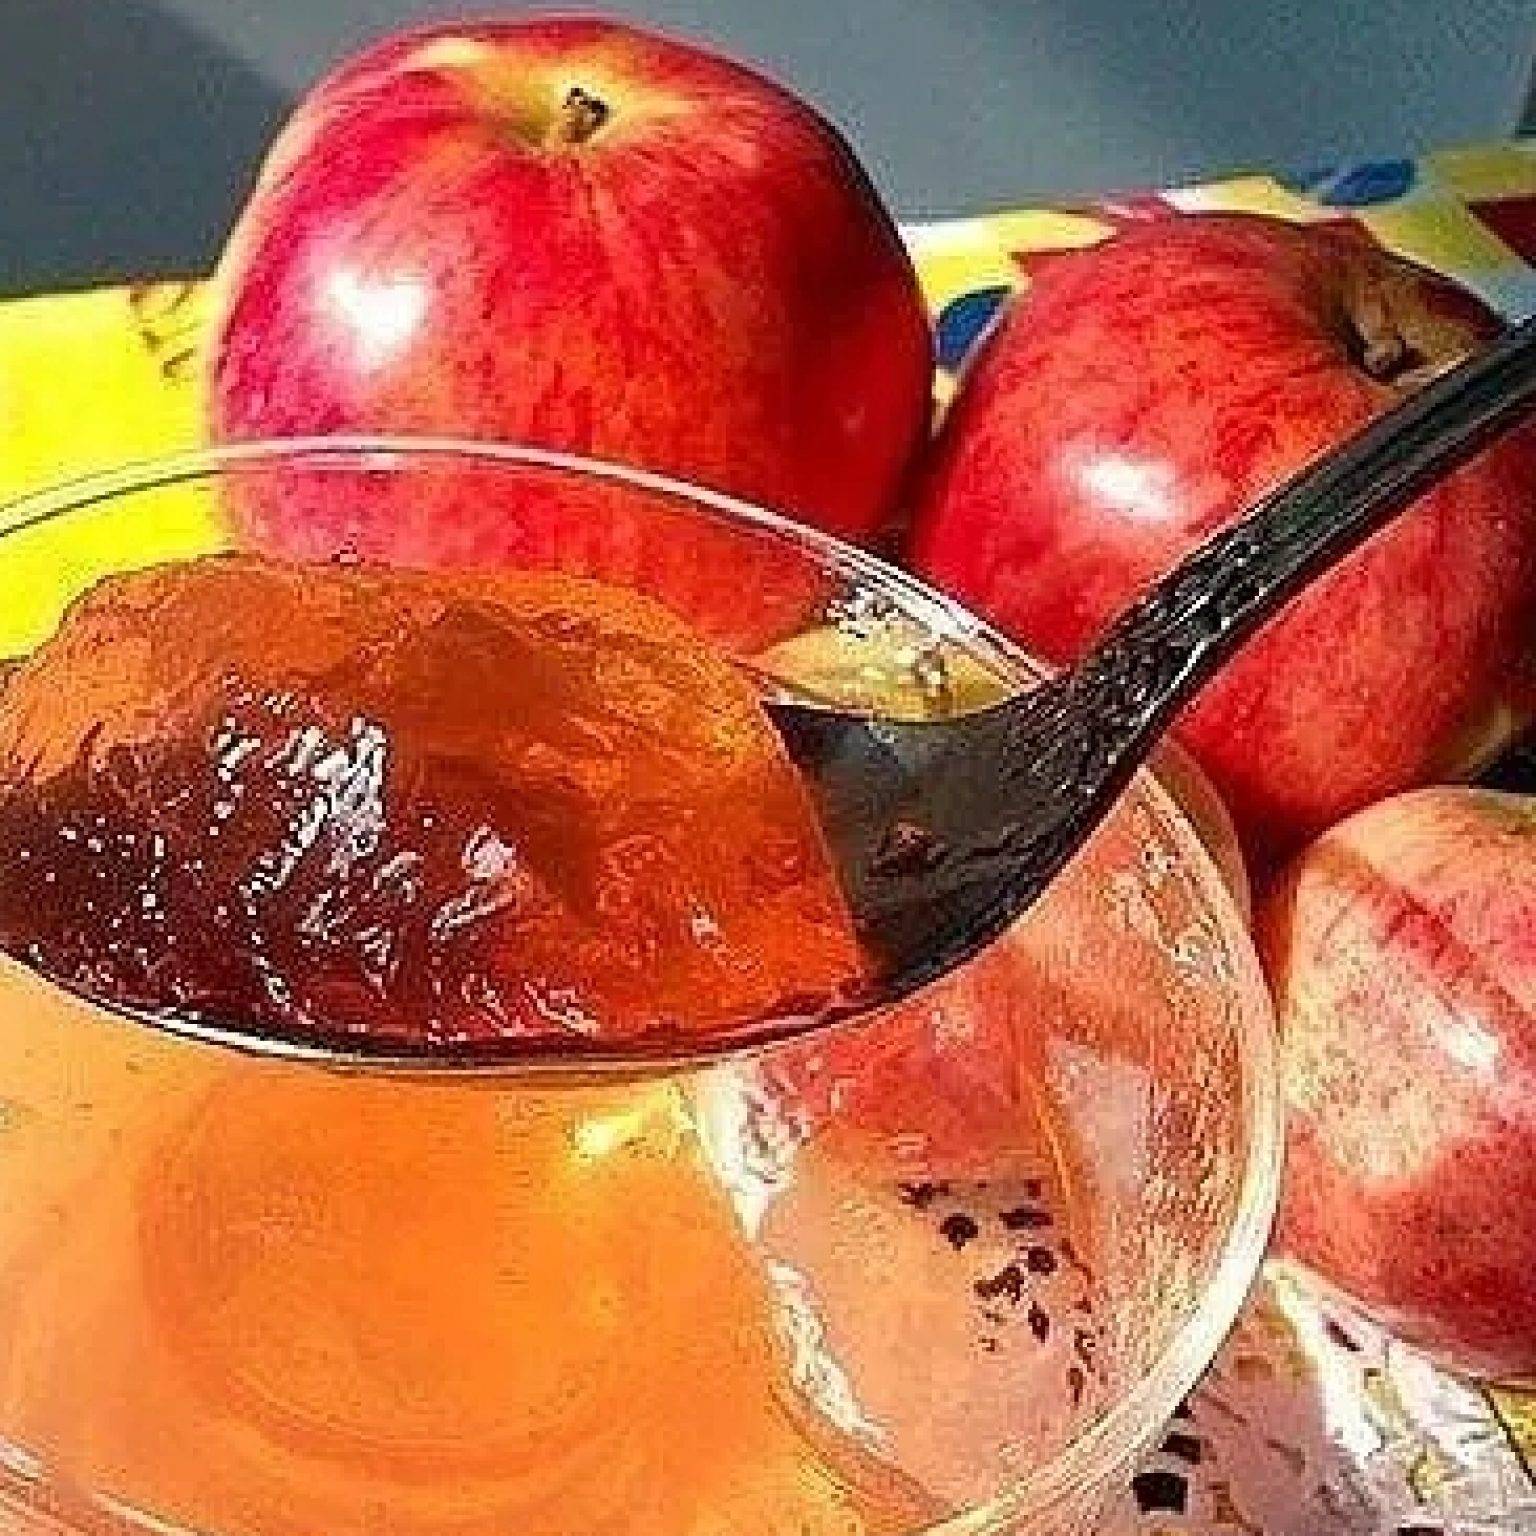 Конфитюр из яблок на зиму: 7 простых рецептов яблочного конфитюра в домашних условиях